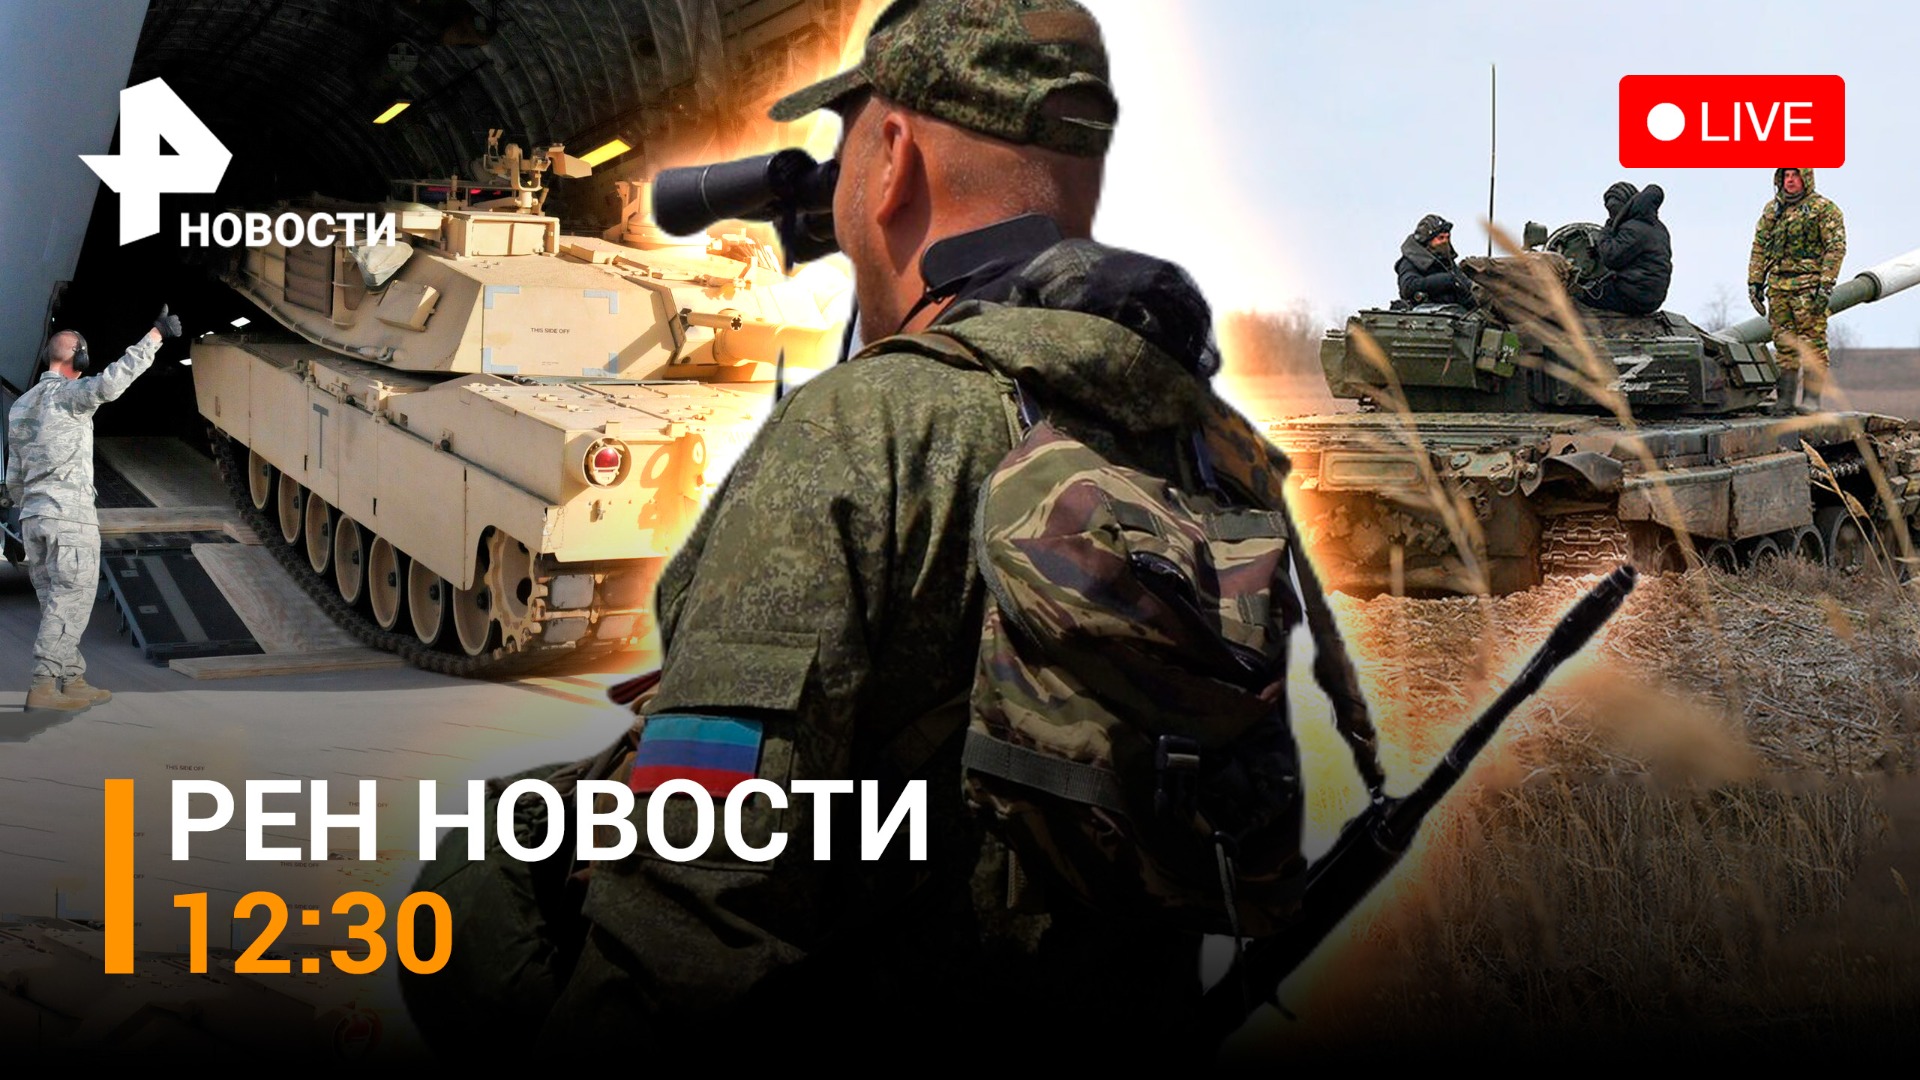 ВСУ сдают позиции в Угледаре. Когда США передадут Украине танки Abrams? / РЕН НОВОСТИ 30.01, 12:30